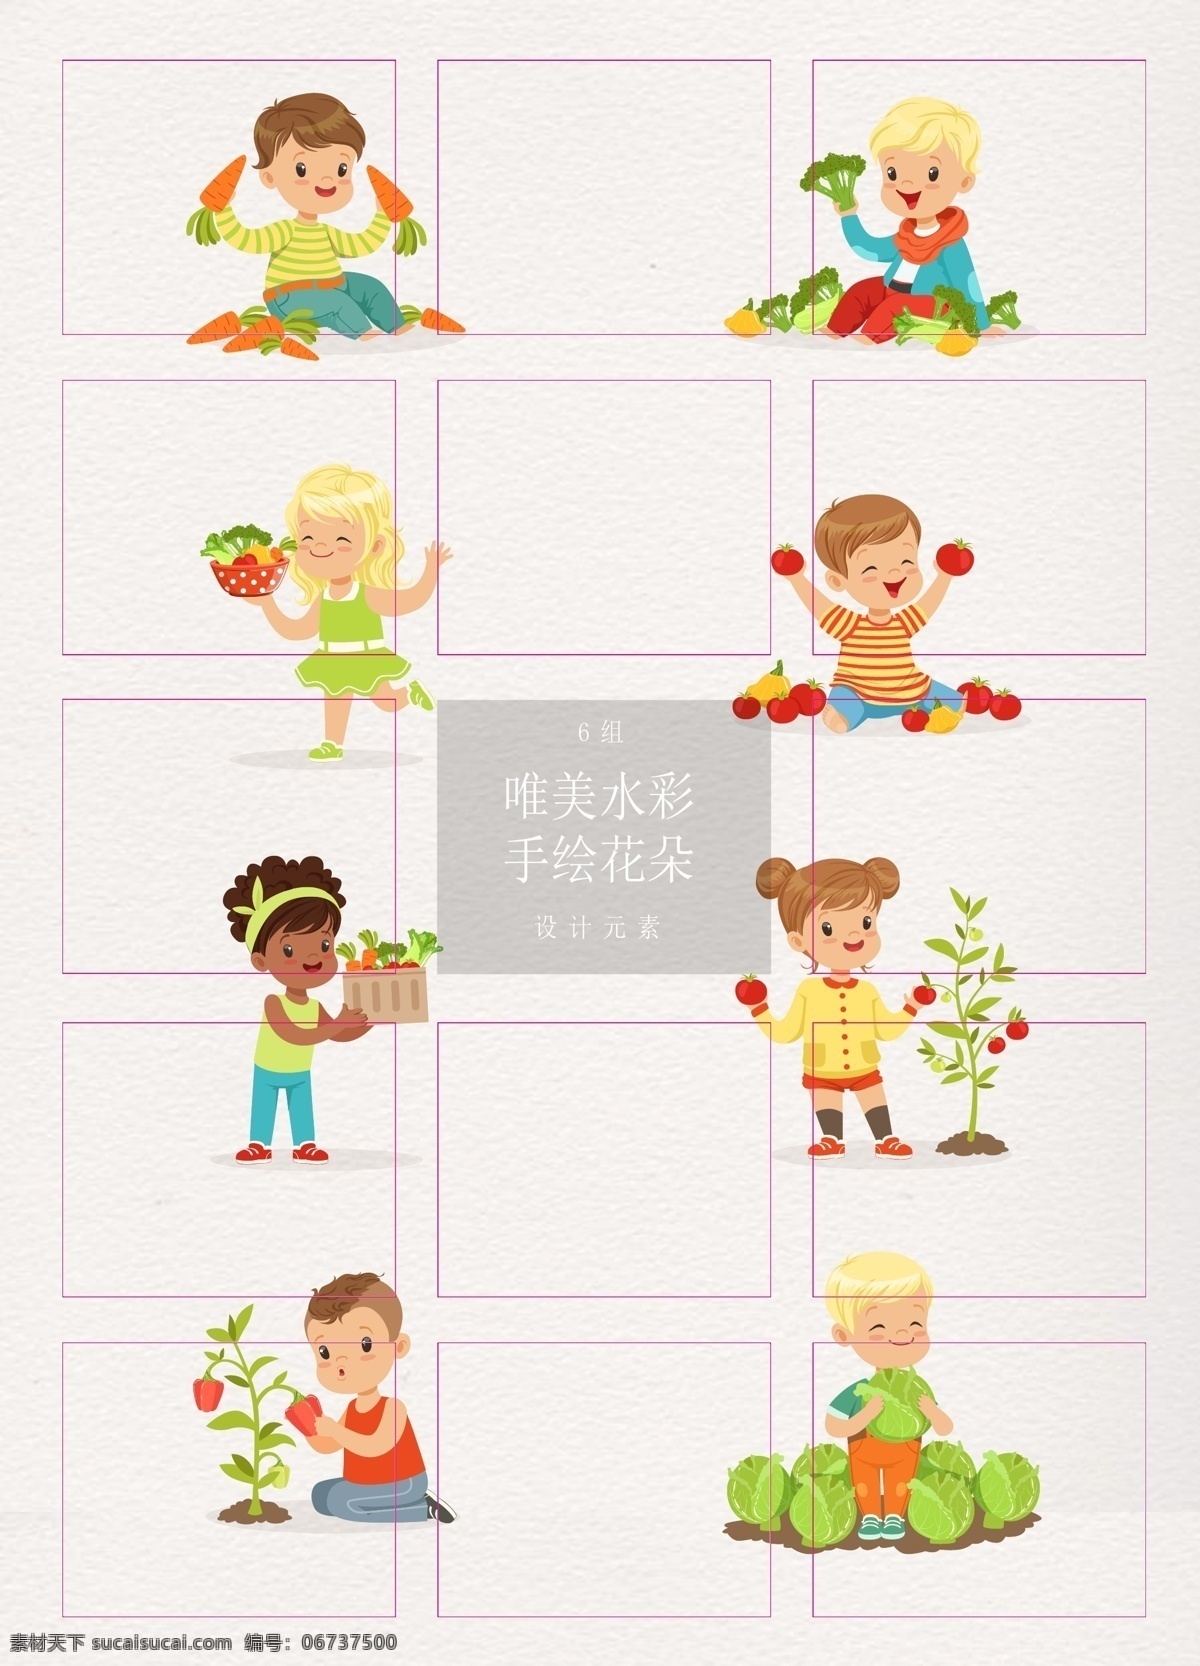 彩色 卡通 可爱 儿童 蔬菜水果 矢量图 女孩 幼儿教育 营养蔬菜 水果 男孩